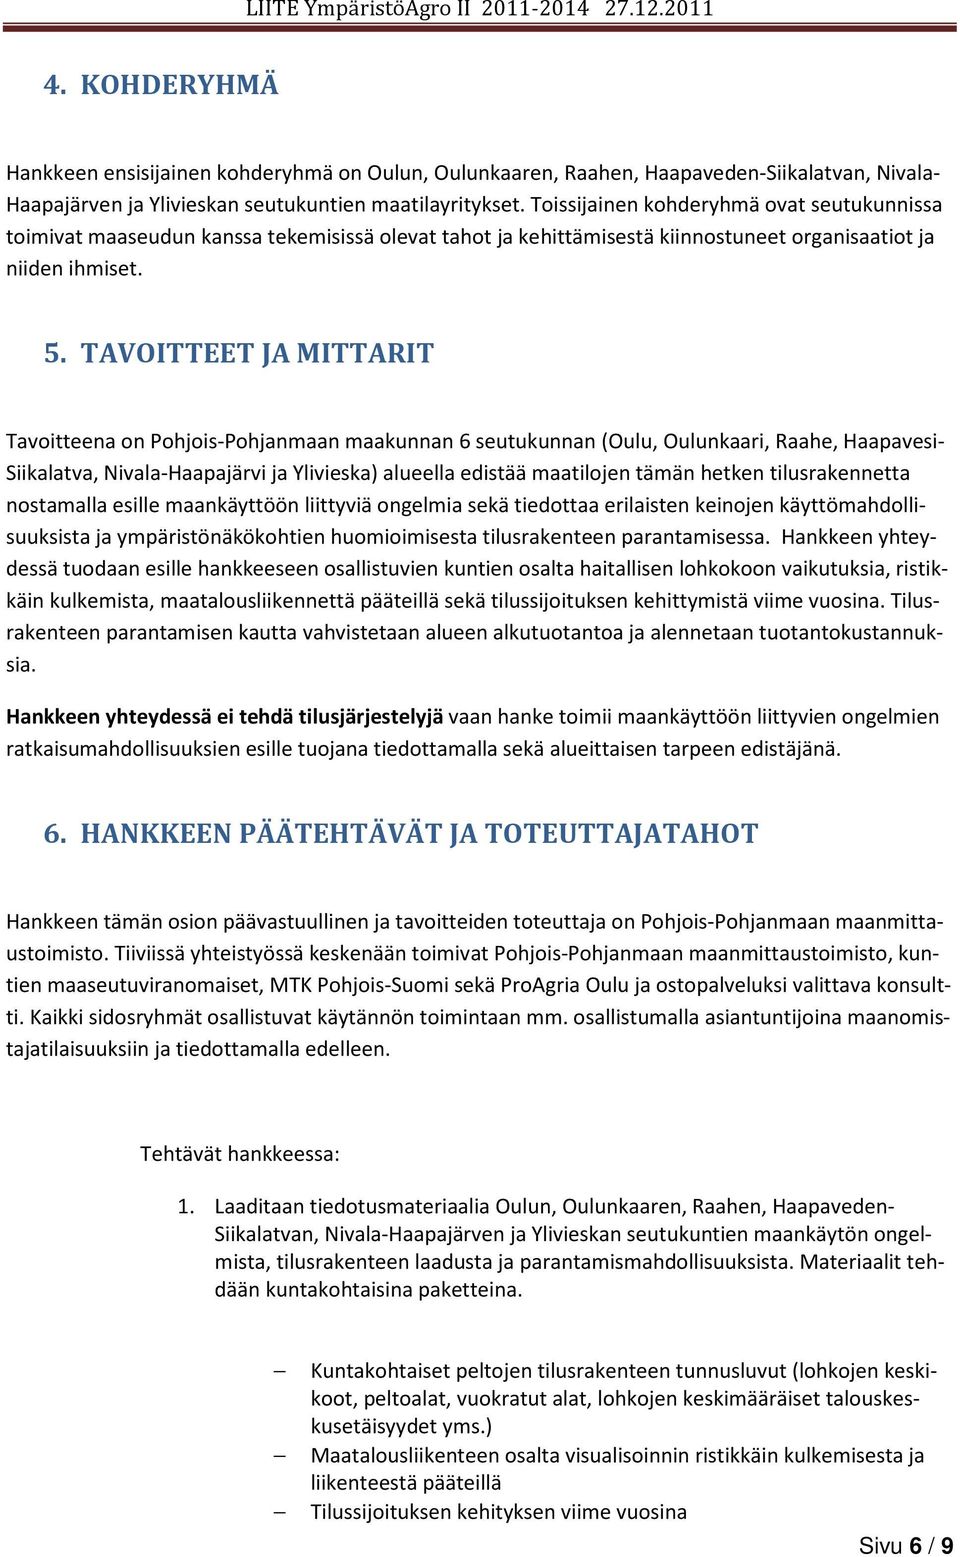 TAVOITTEET JA MITTARIT Tavoitteena on Pohjois-Pohjanmaan maakunnan 6 seutukunnan (Oulu, Oulunkaari, Raahe, Haapavesi- Siikalatva, Nivala-Haapajärvi ja Ylivieska) alueella edistää maatilojen tämän